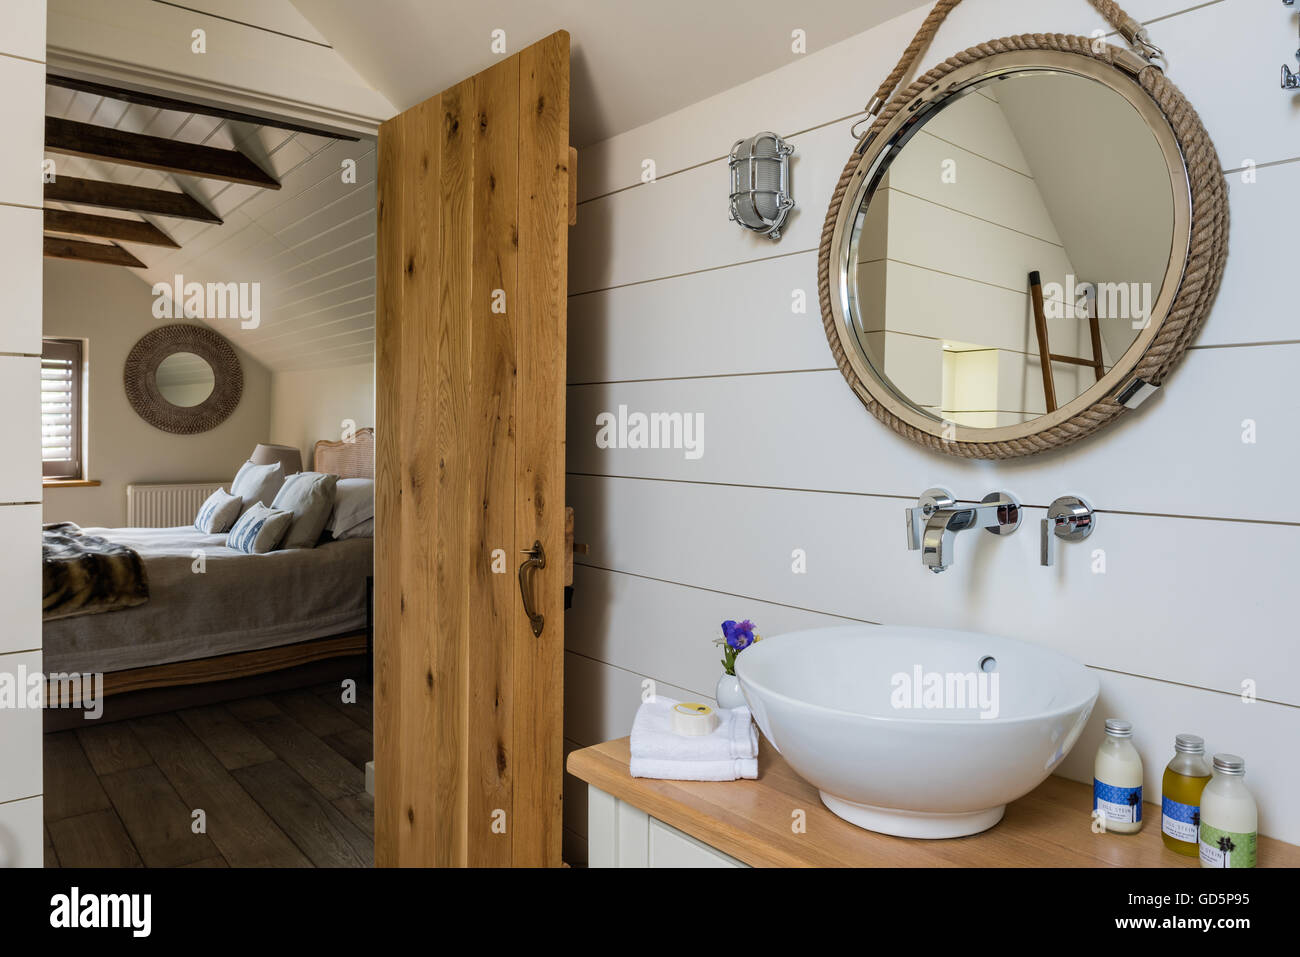 Tablones de madera pintada de blanco y estilo náutico espejo en el cuarto de baño Foto de stock